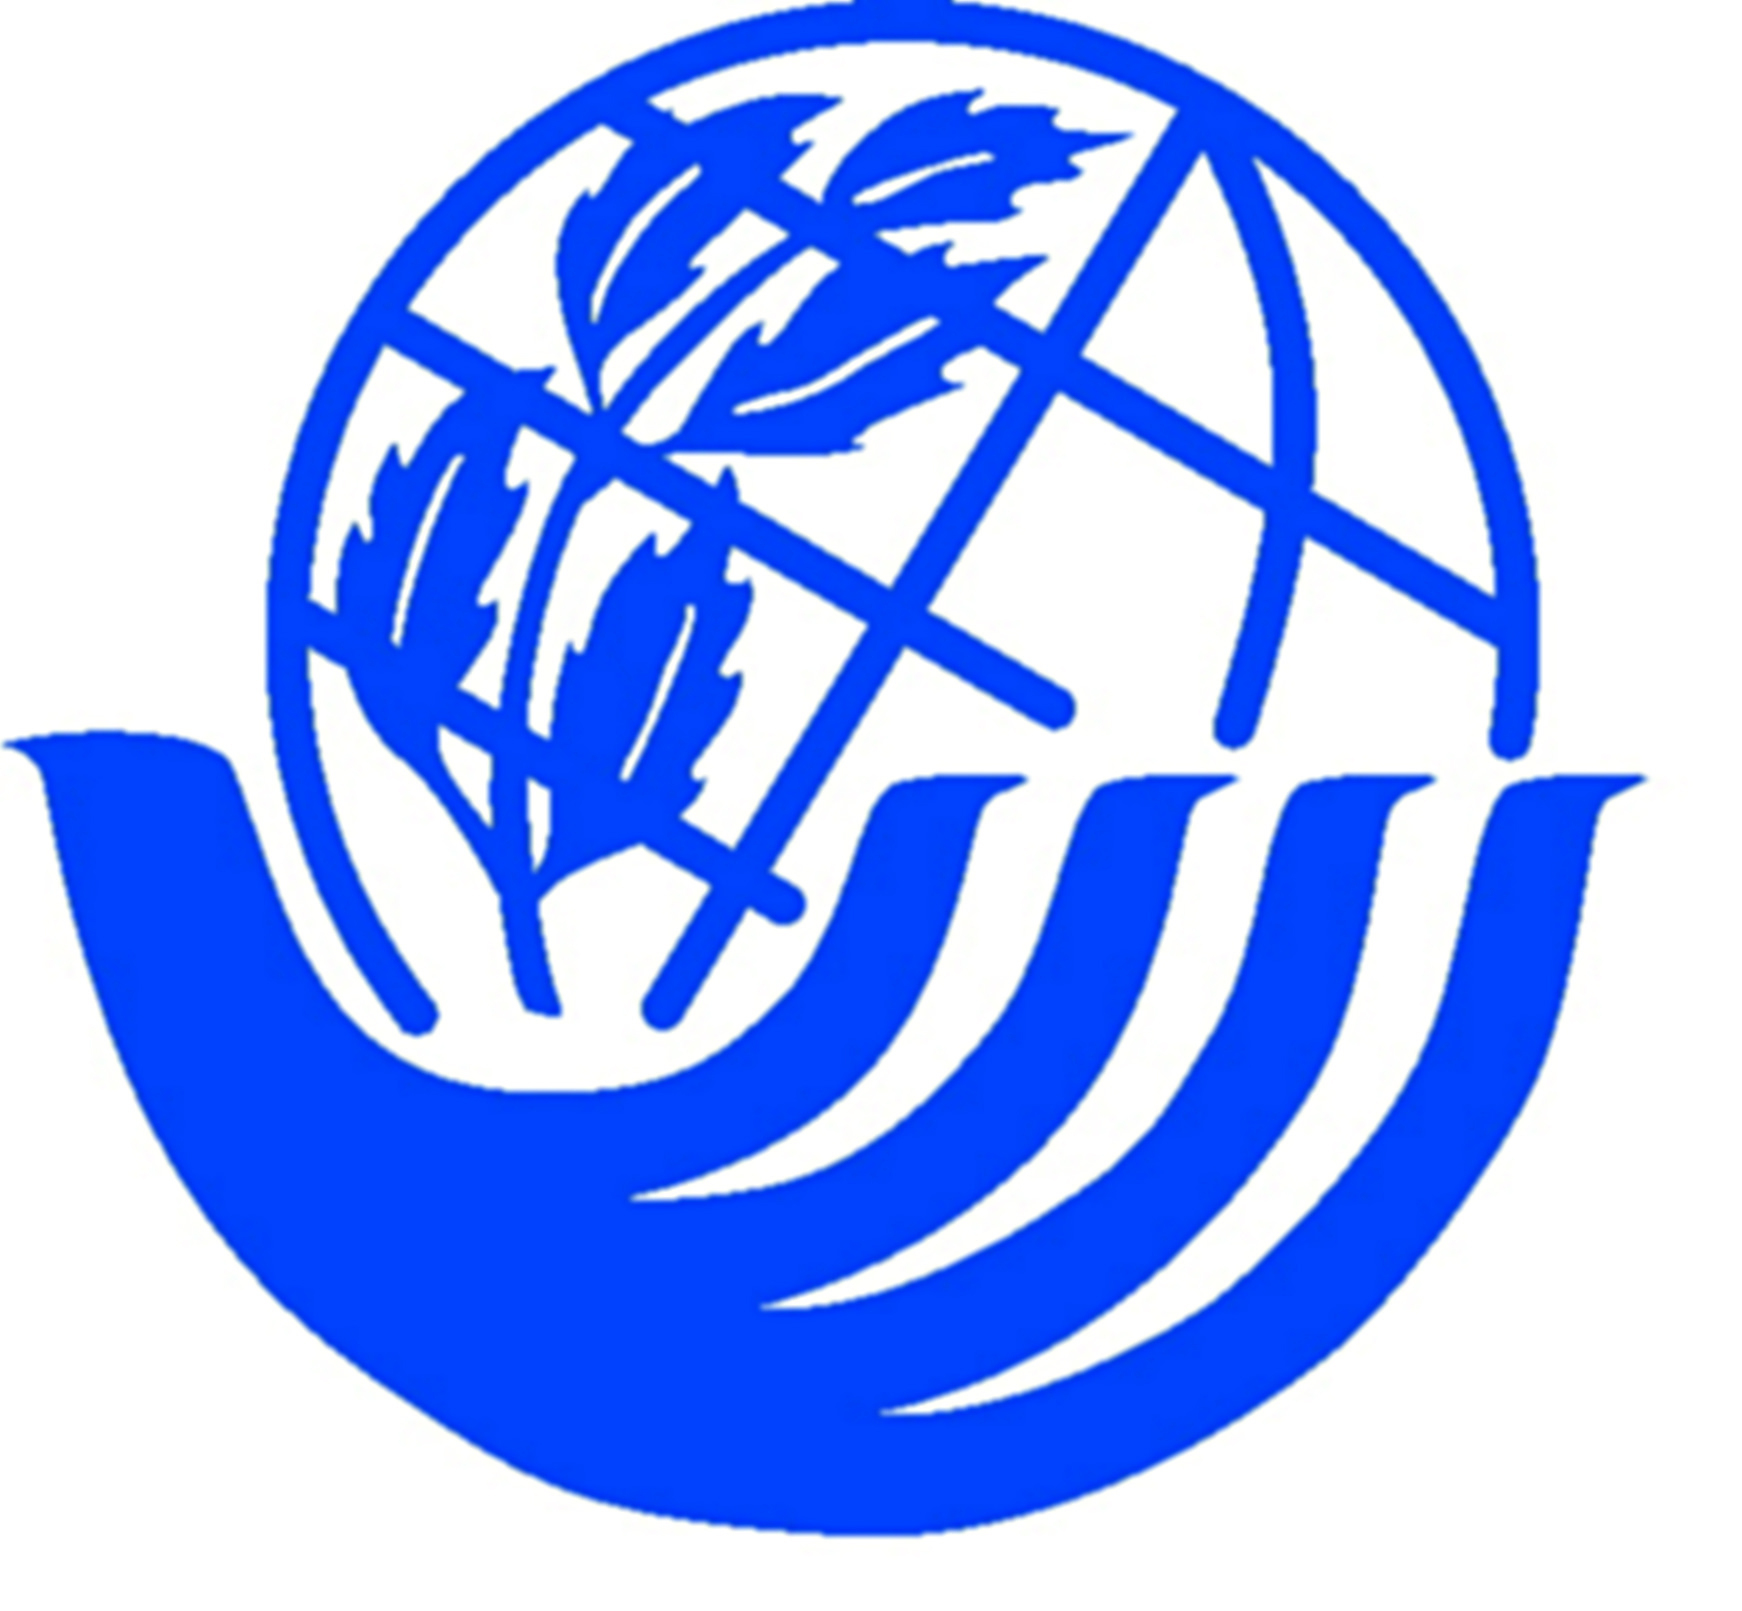 Ilustração. Logotipo. Mão na cor azul, com dedos alongados segurando o globo terrestre inclinado, também azul. Nele o desenho de um ramo.